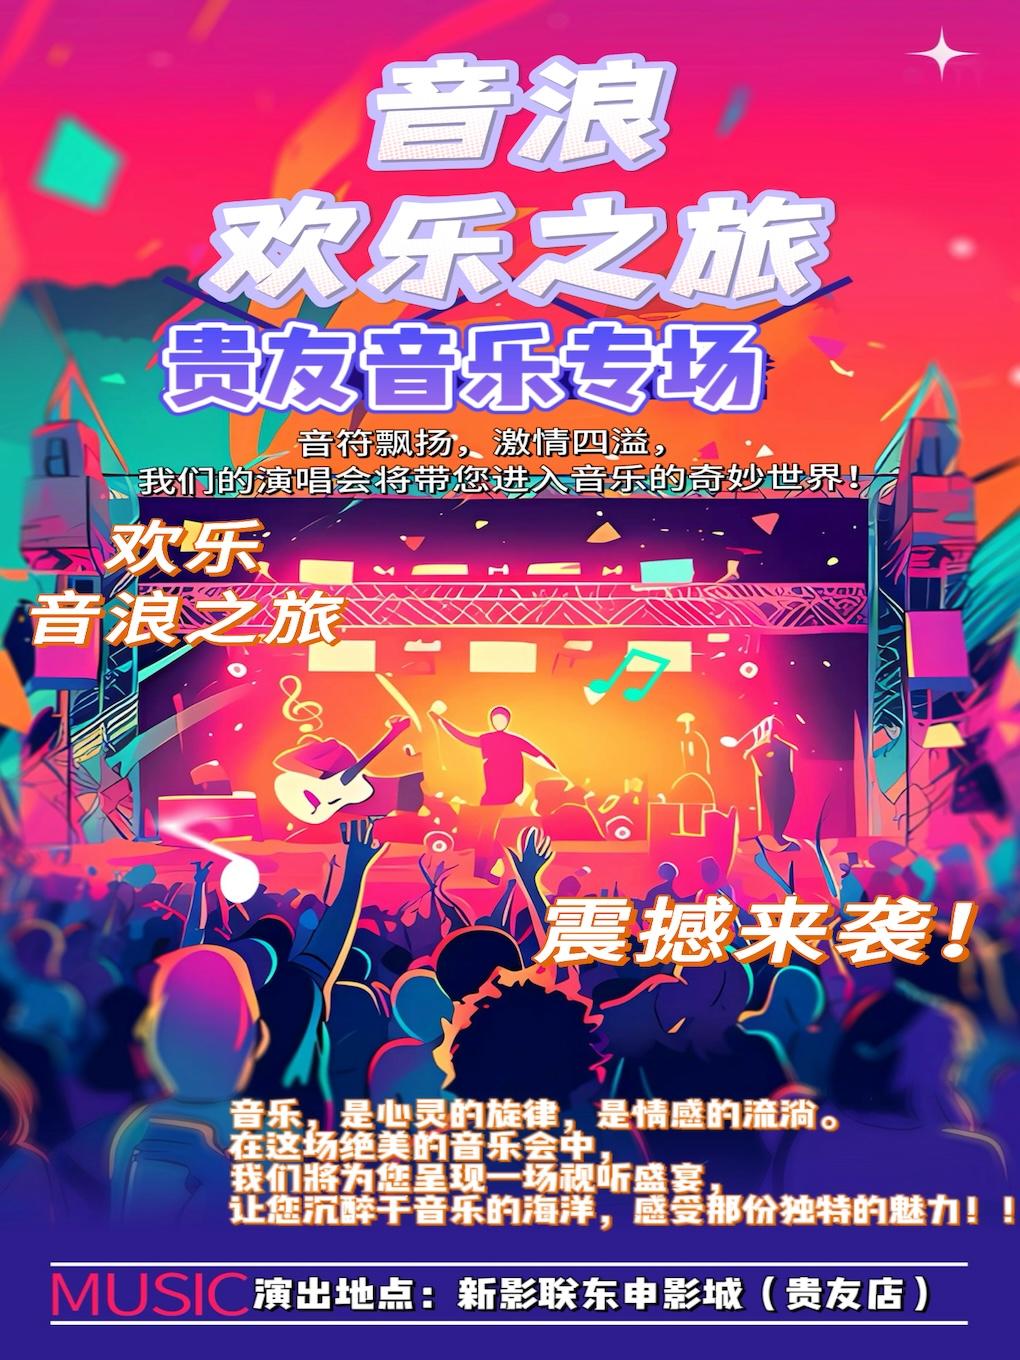 新年音乐【金曲演唱会】-北京